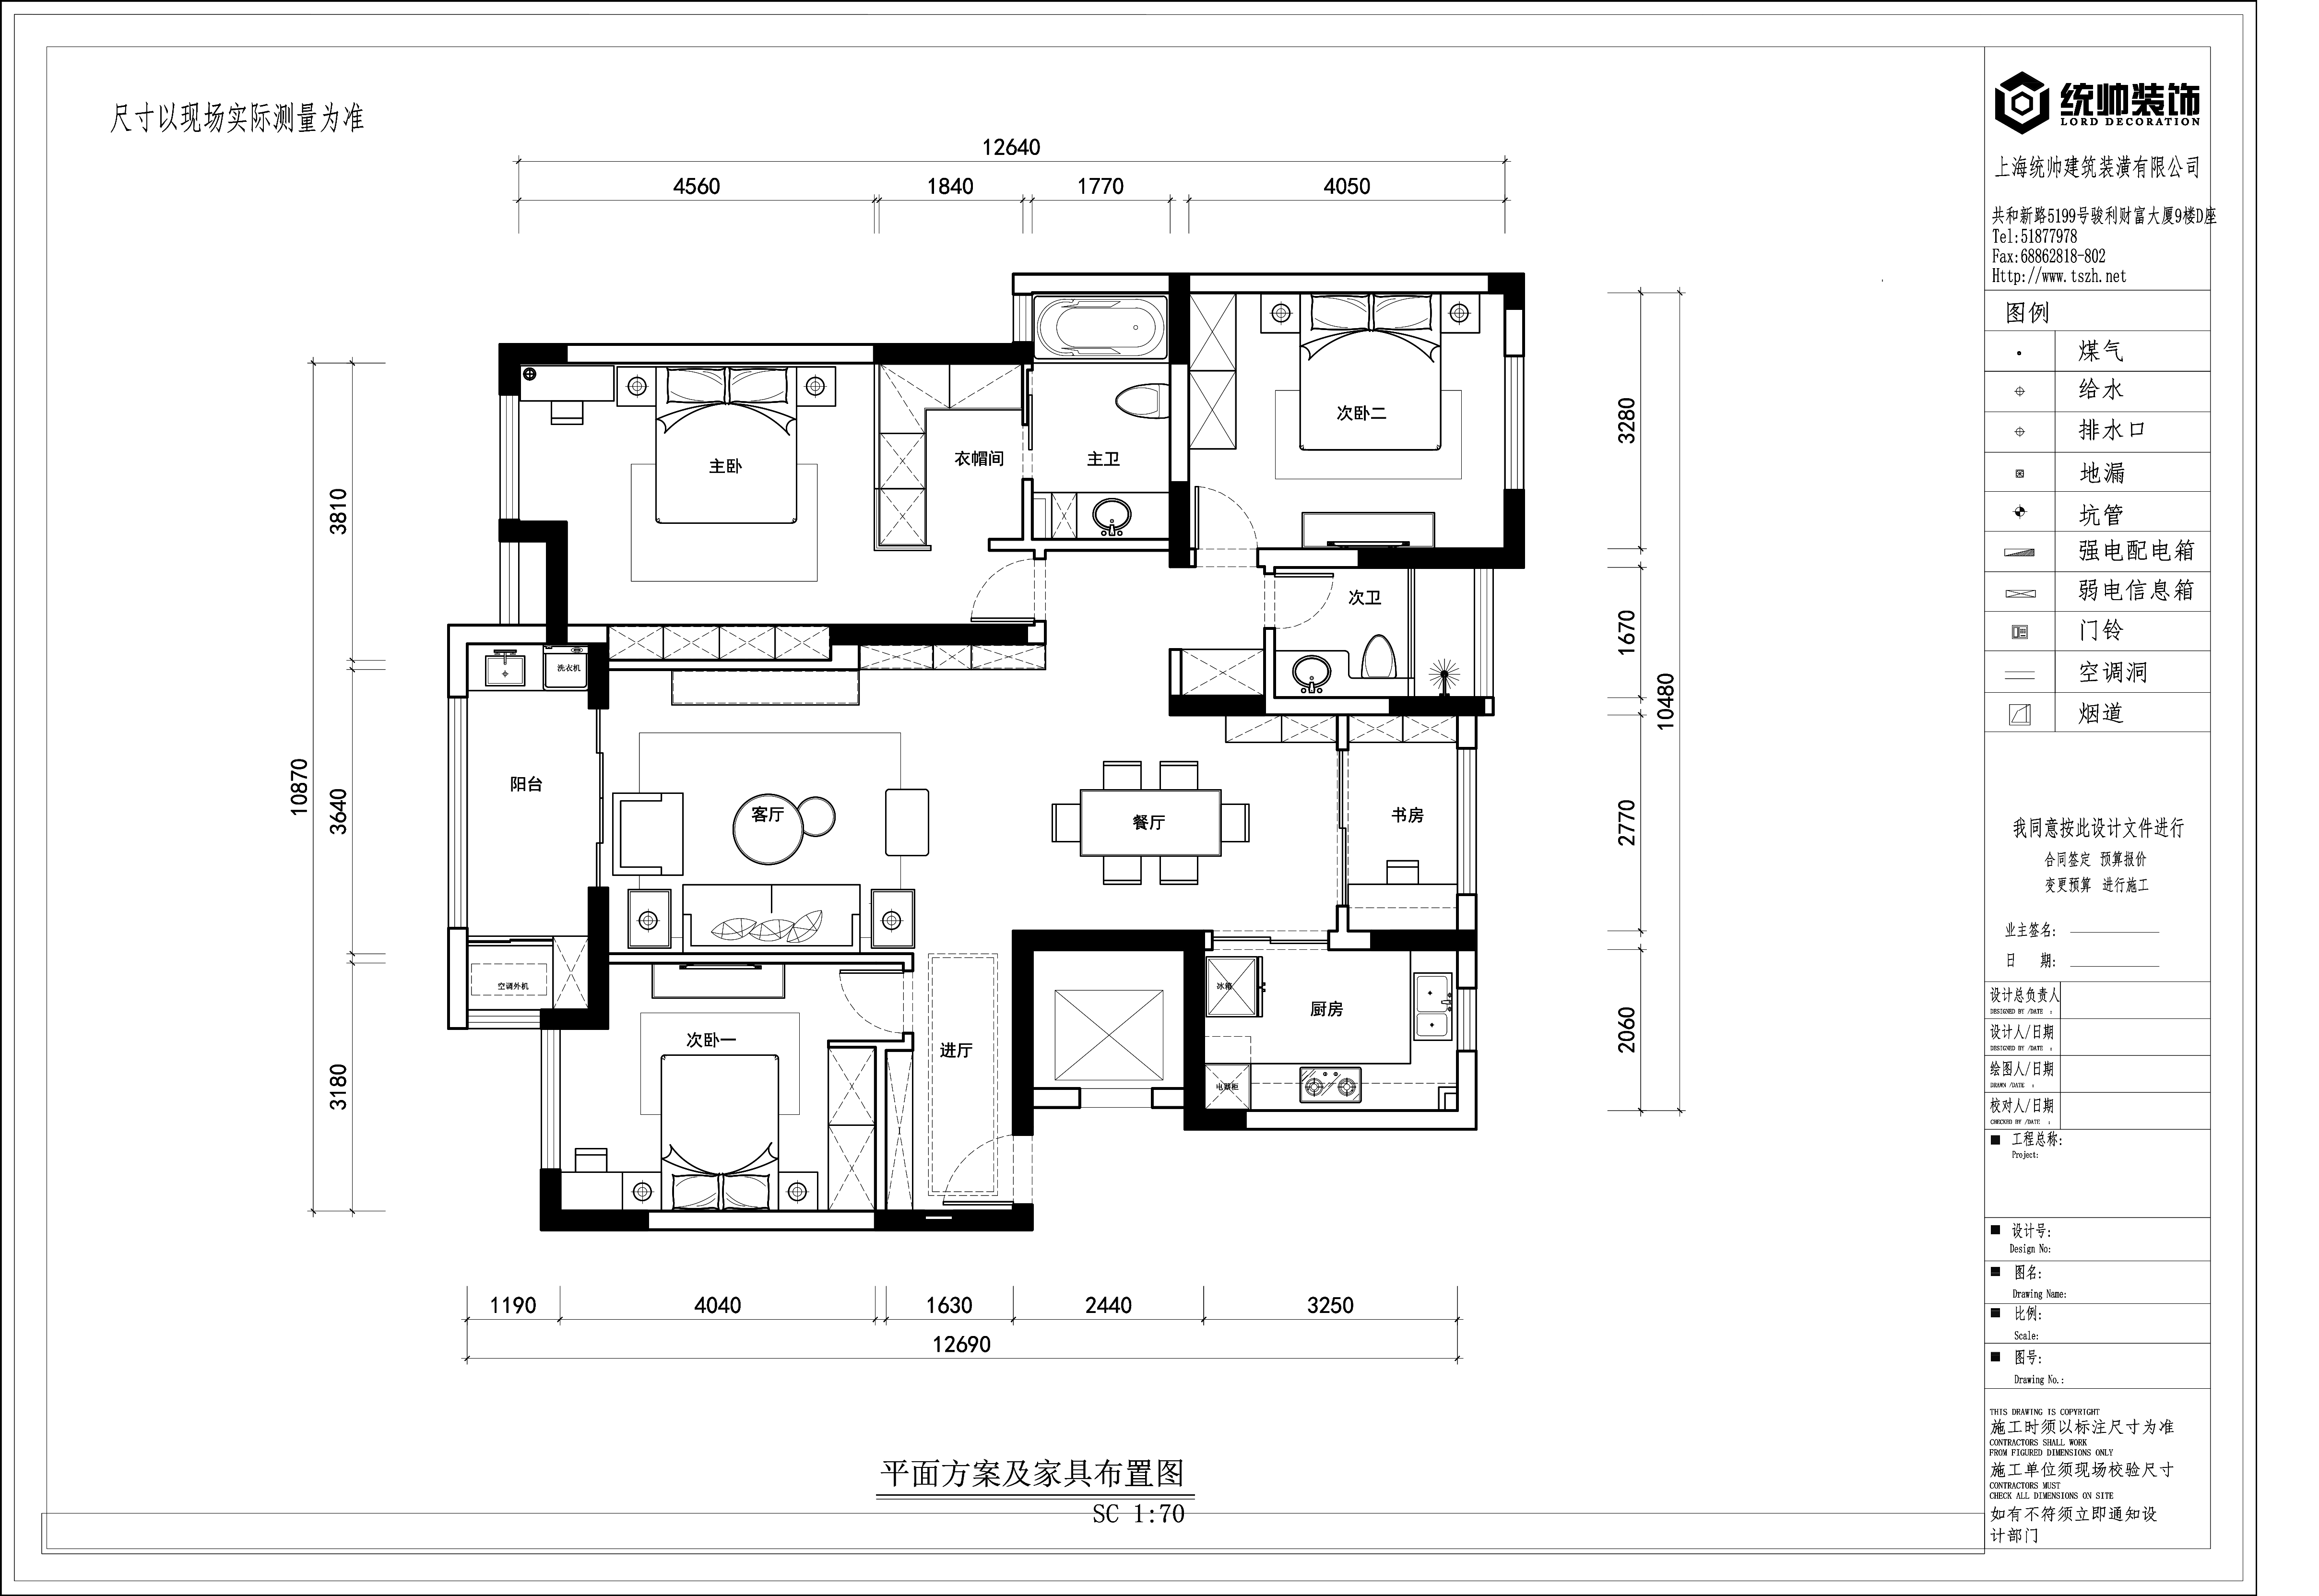 中環國際公寓戶型分析圖